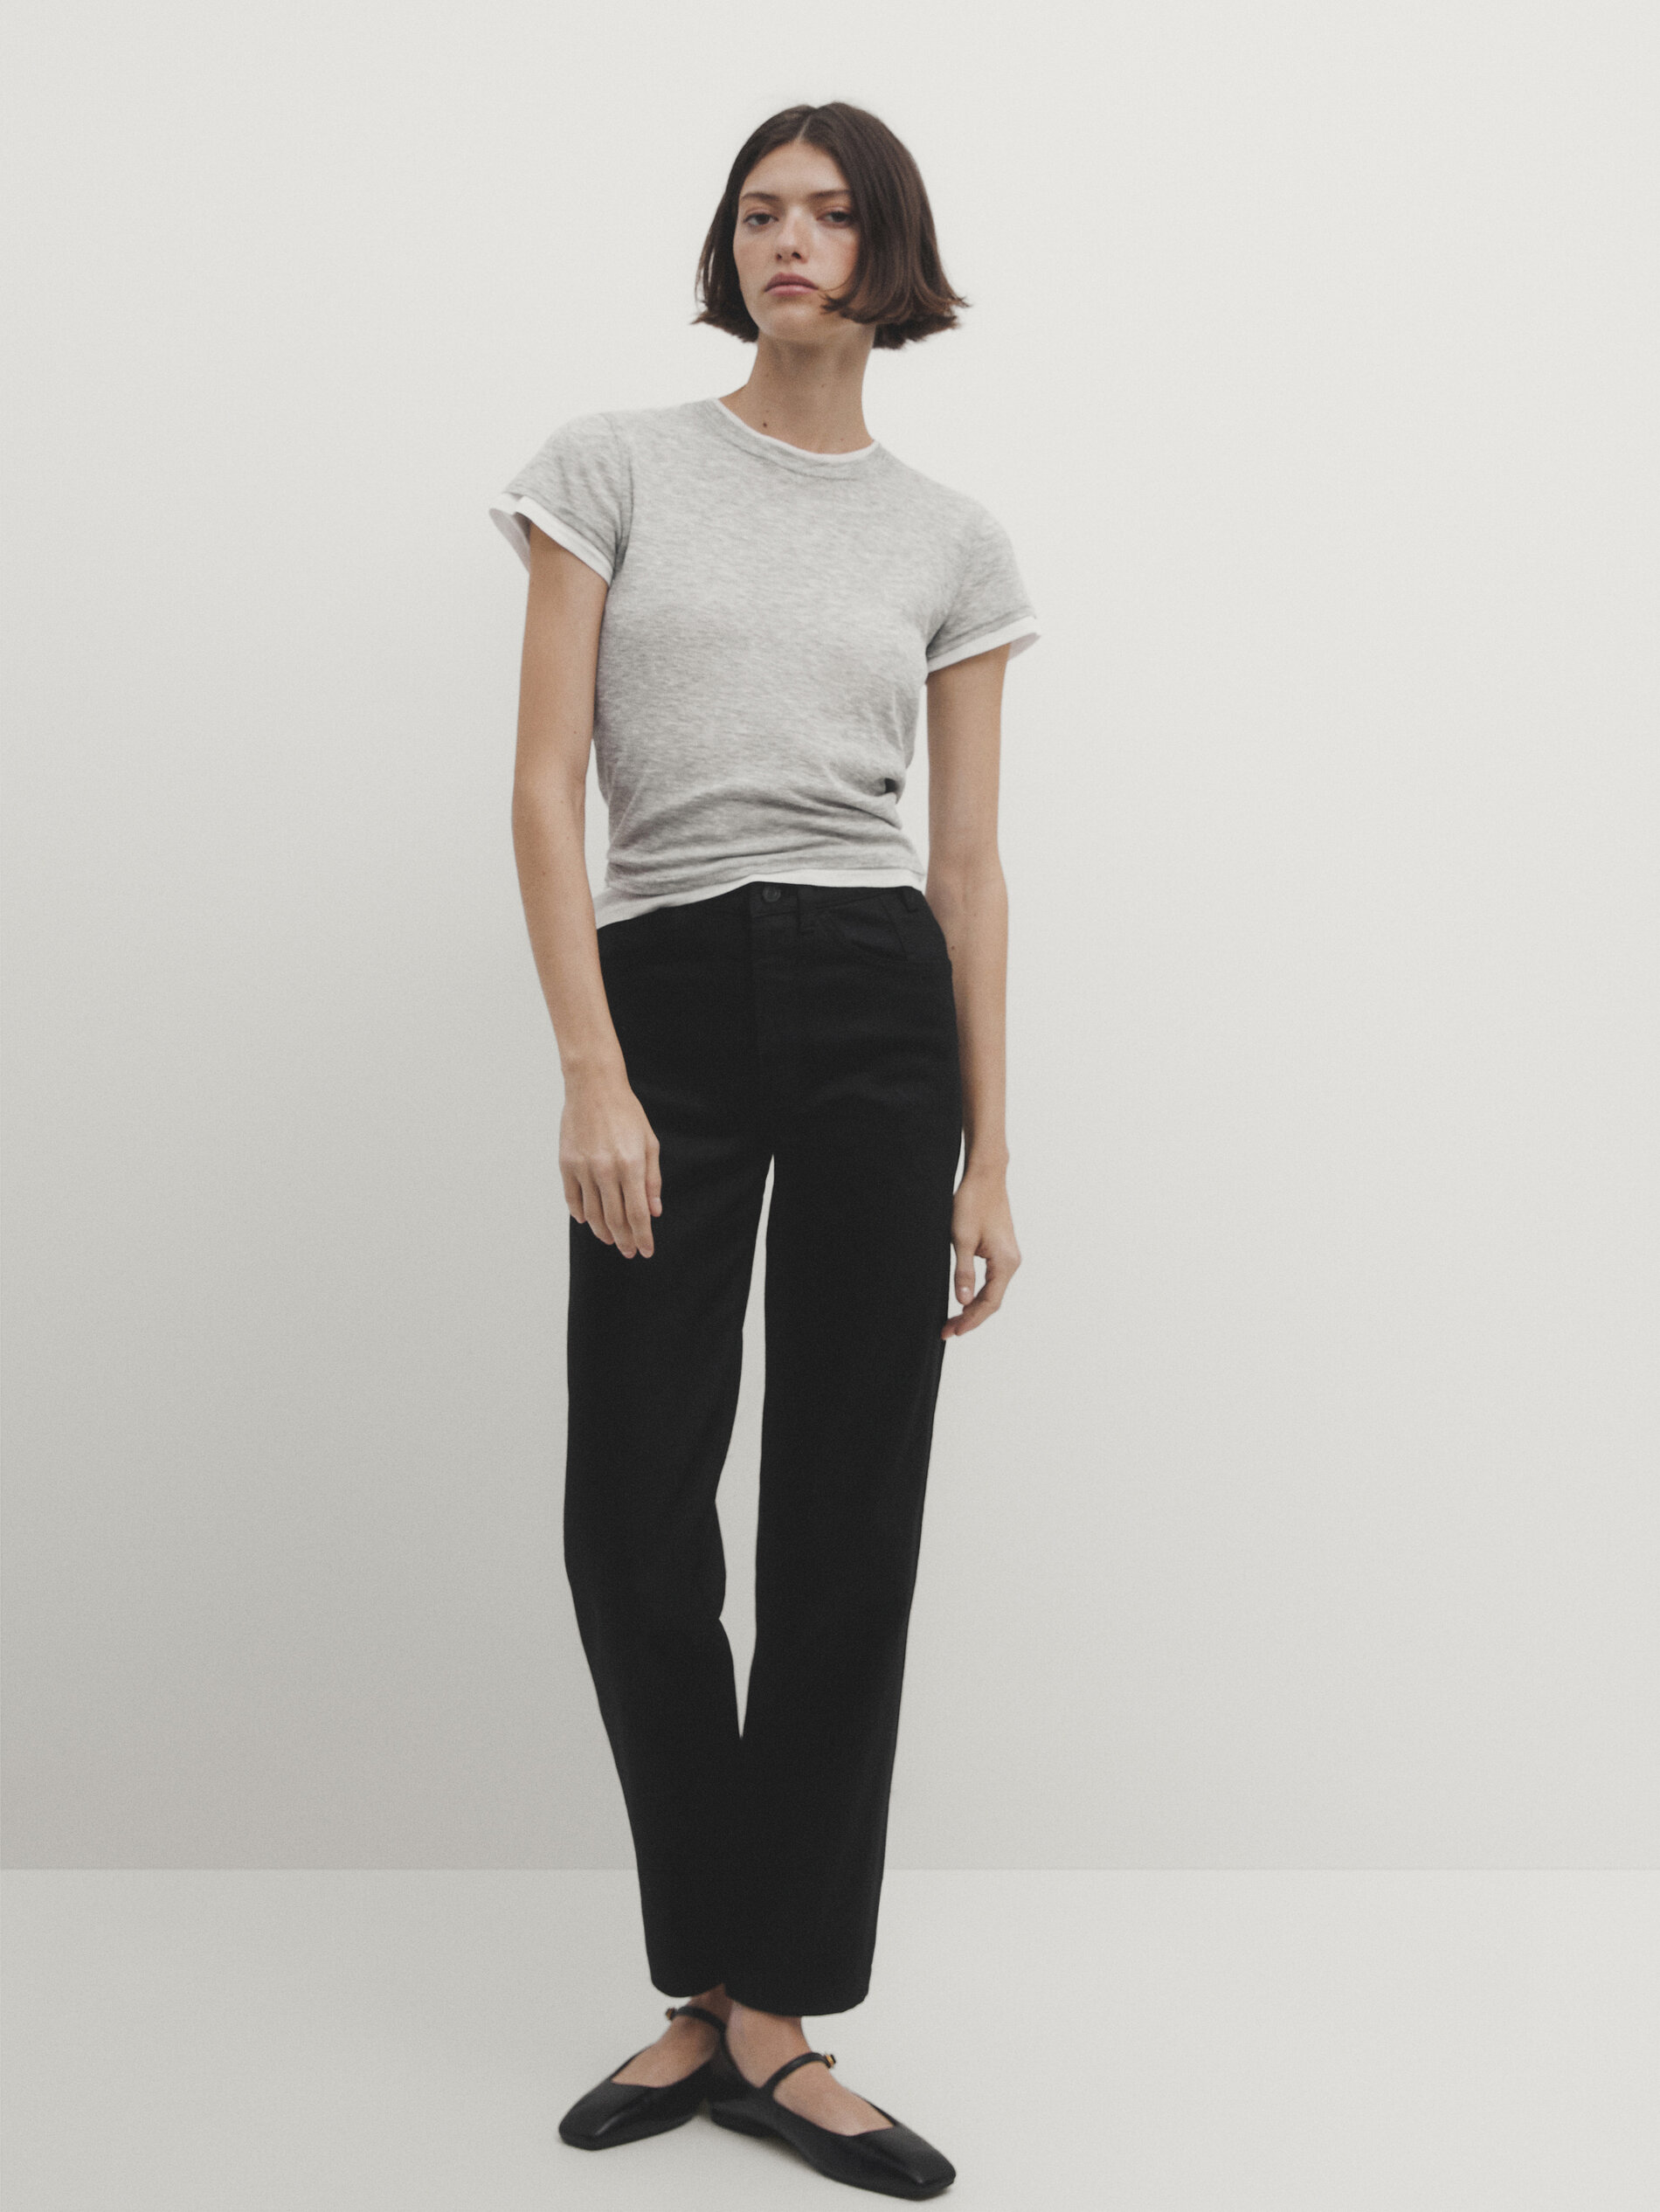 Slim Fit Cigarette trousers - Black/White checked - Men | H&M